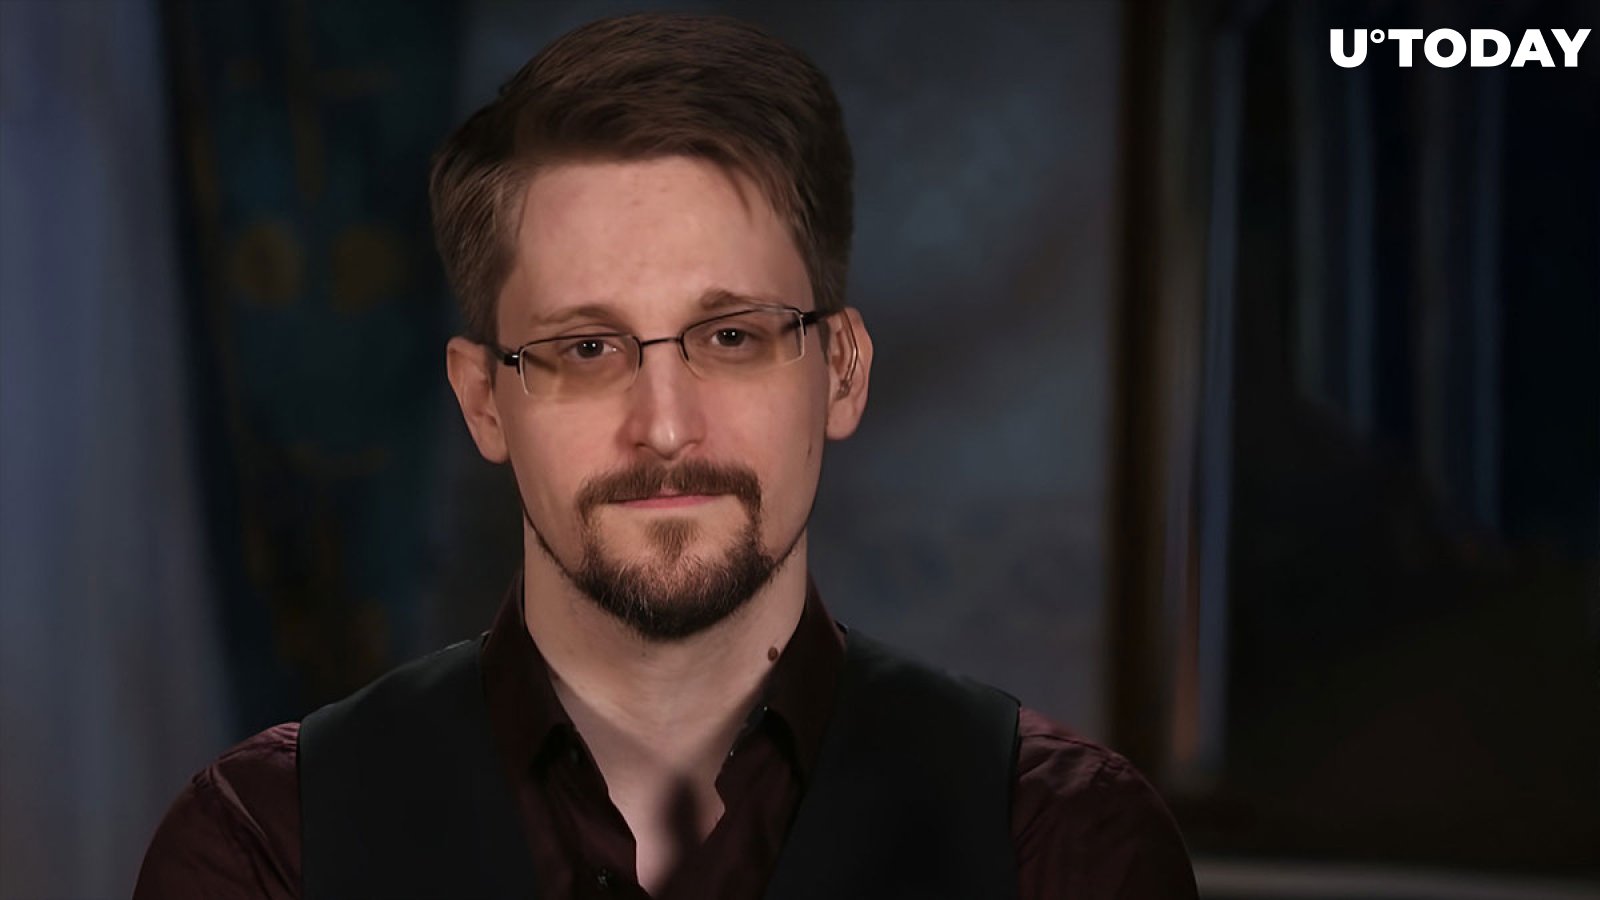 Edward Snowden Bullish on Bitcoin, Highlights What It Can Fix